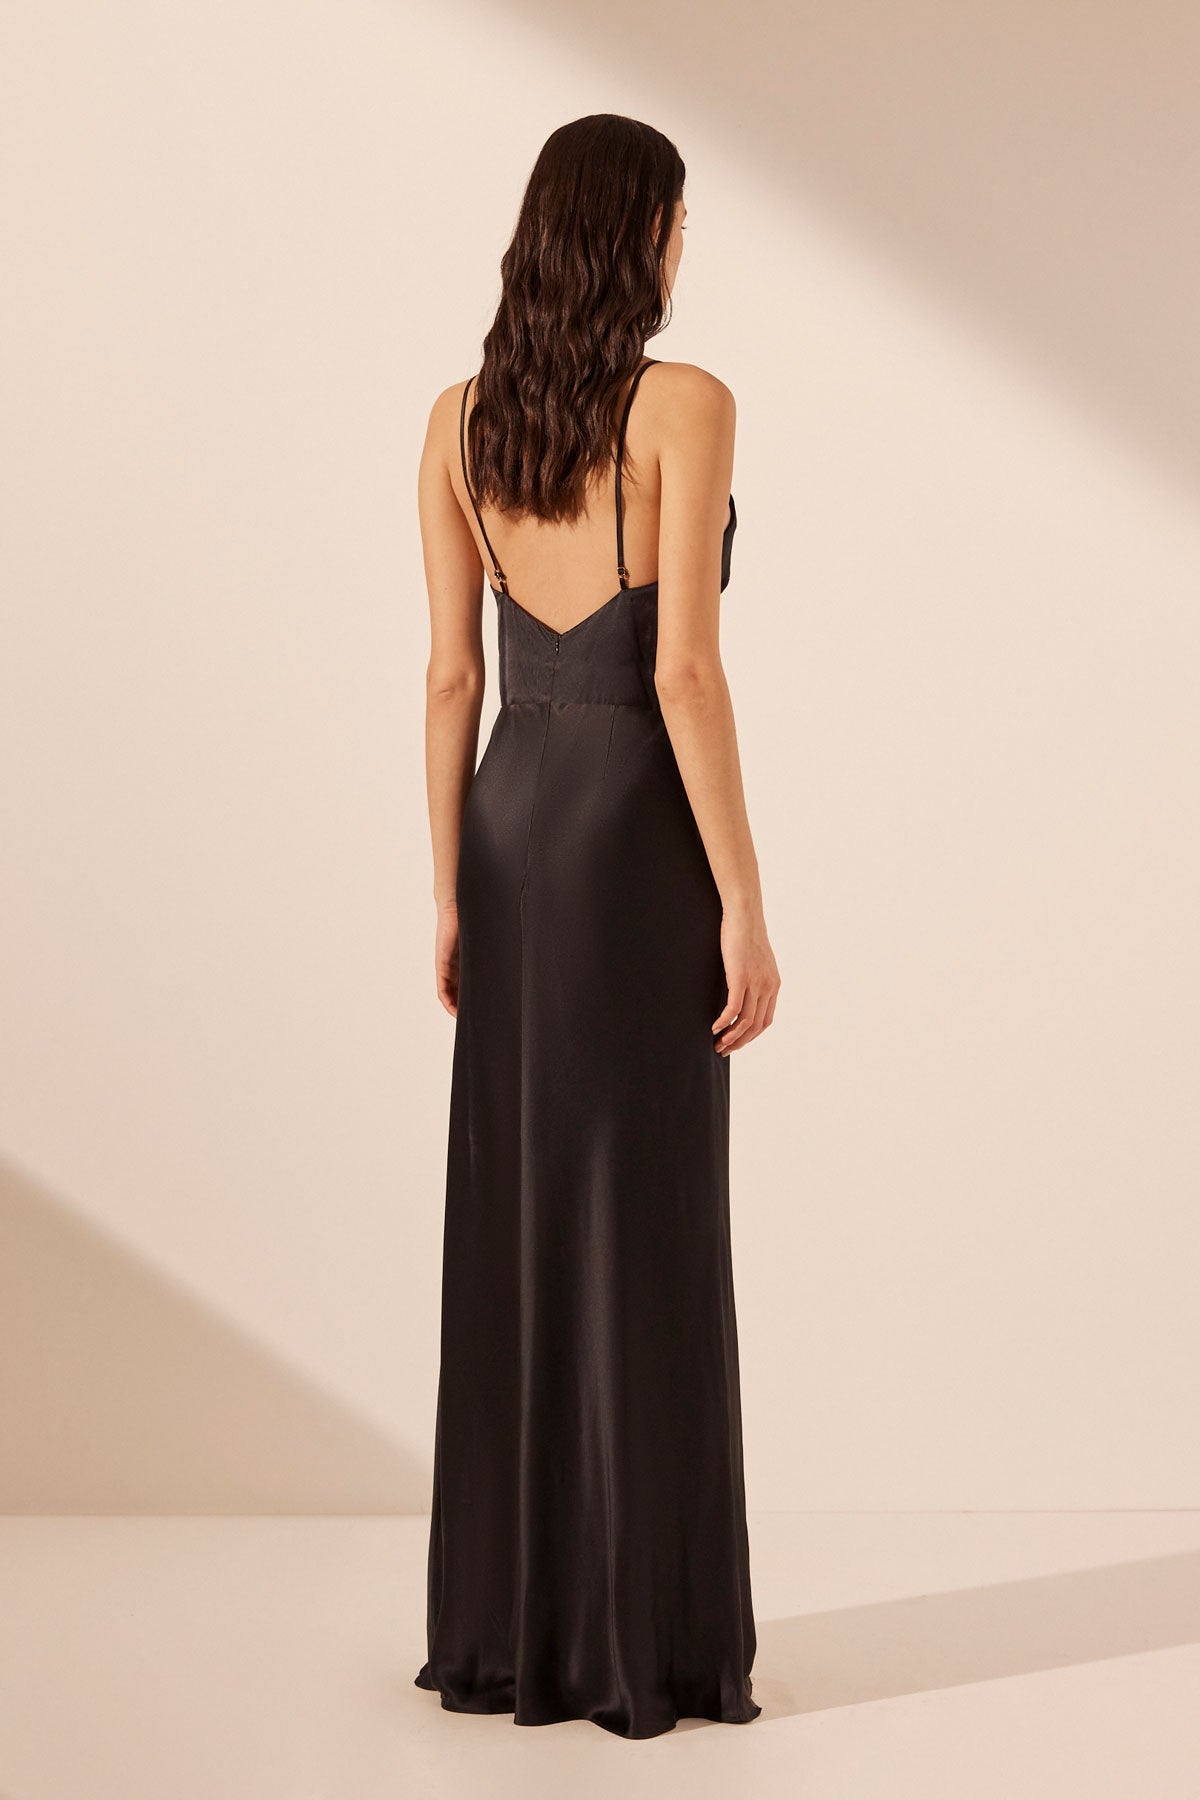 Black Lace Maxi Slip Dress, Dresses